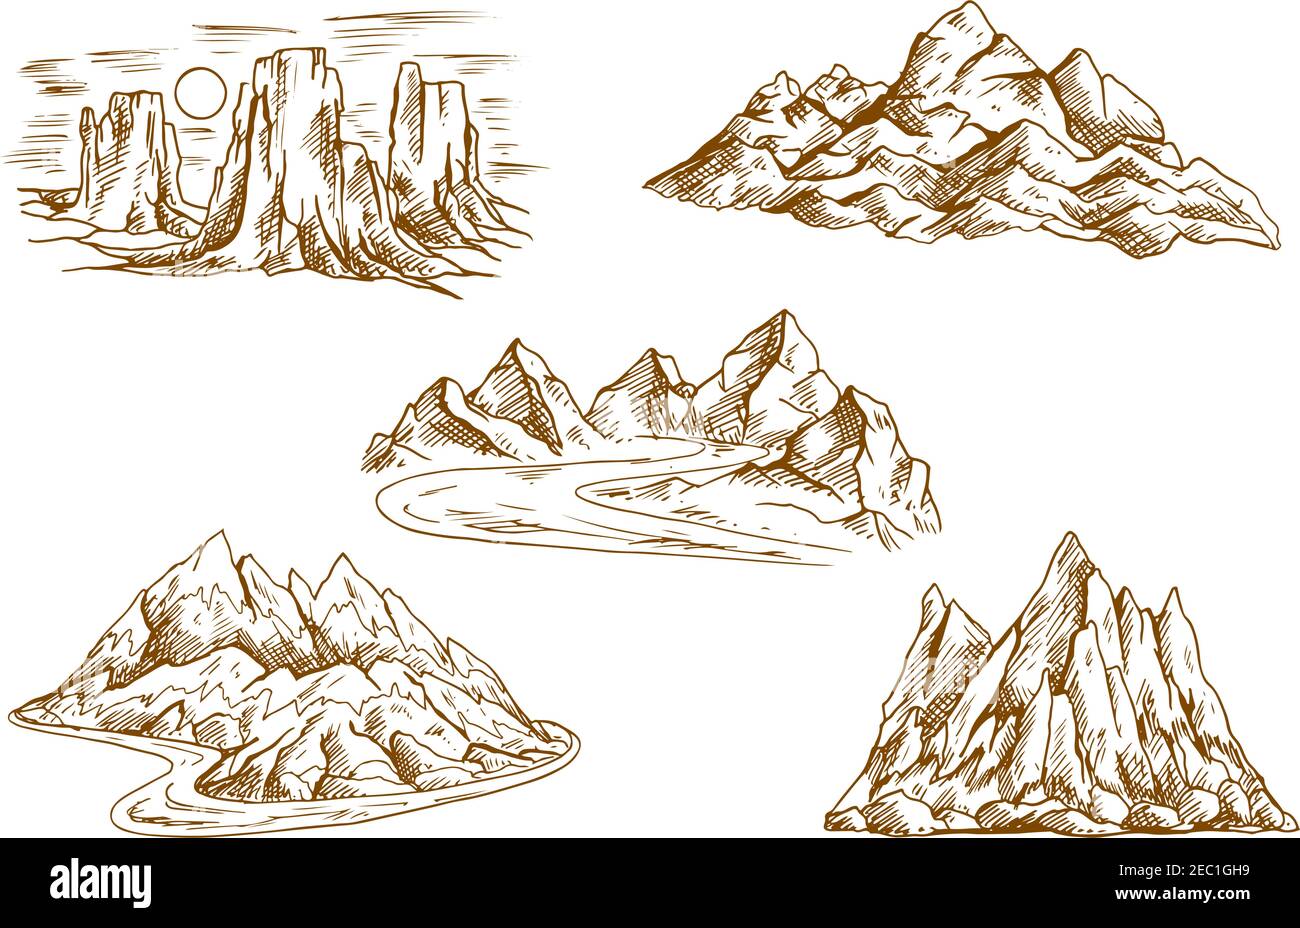 Retro skizzierte Berge Ikonen mit Landschaften von hohen Klippen und Hügeln, felsigen Kamm und Gipfel, Turmfelsen und Bergtäler mit gewundenen Straßen. Stock Vektor